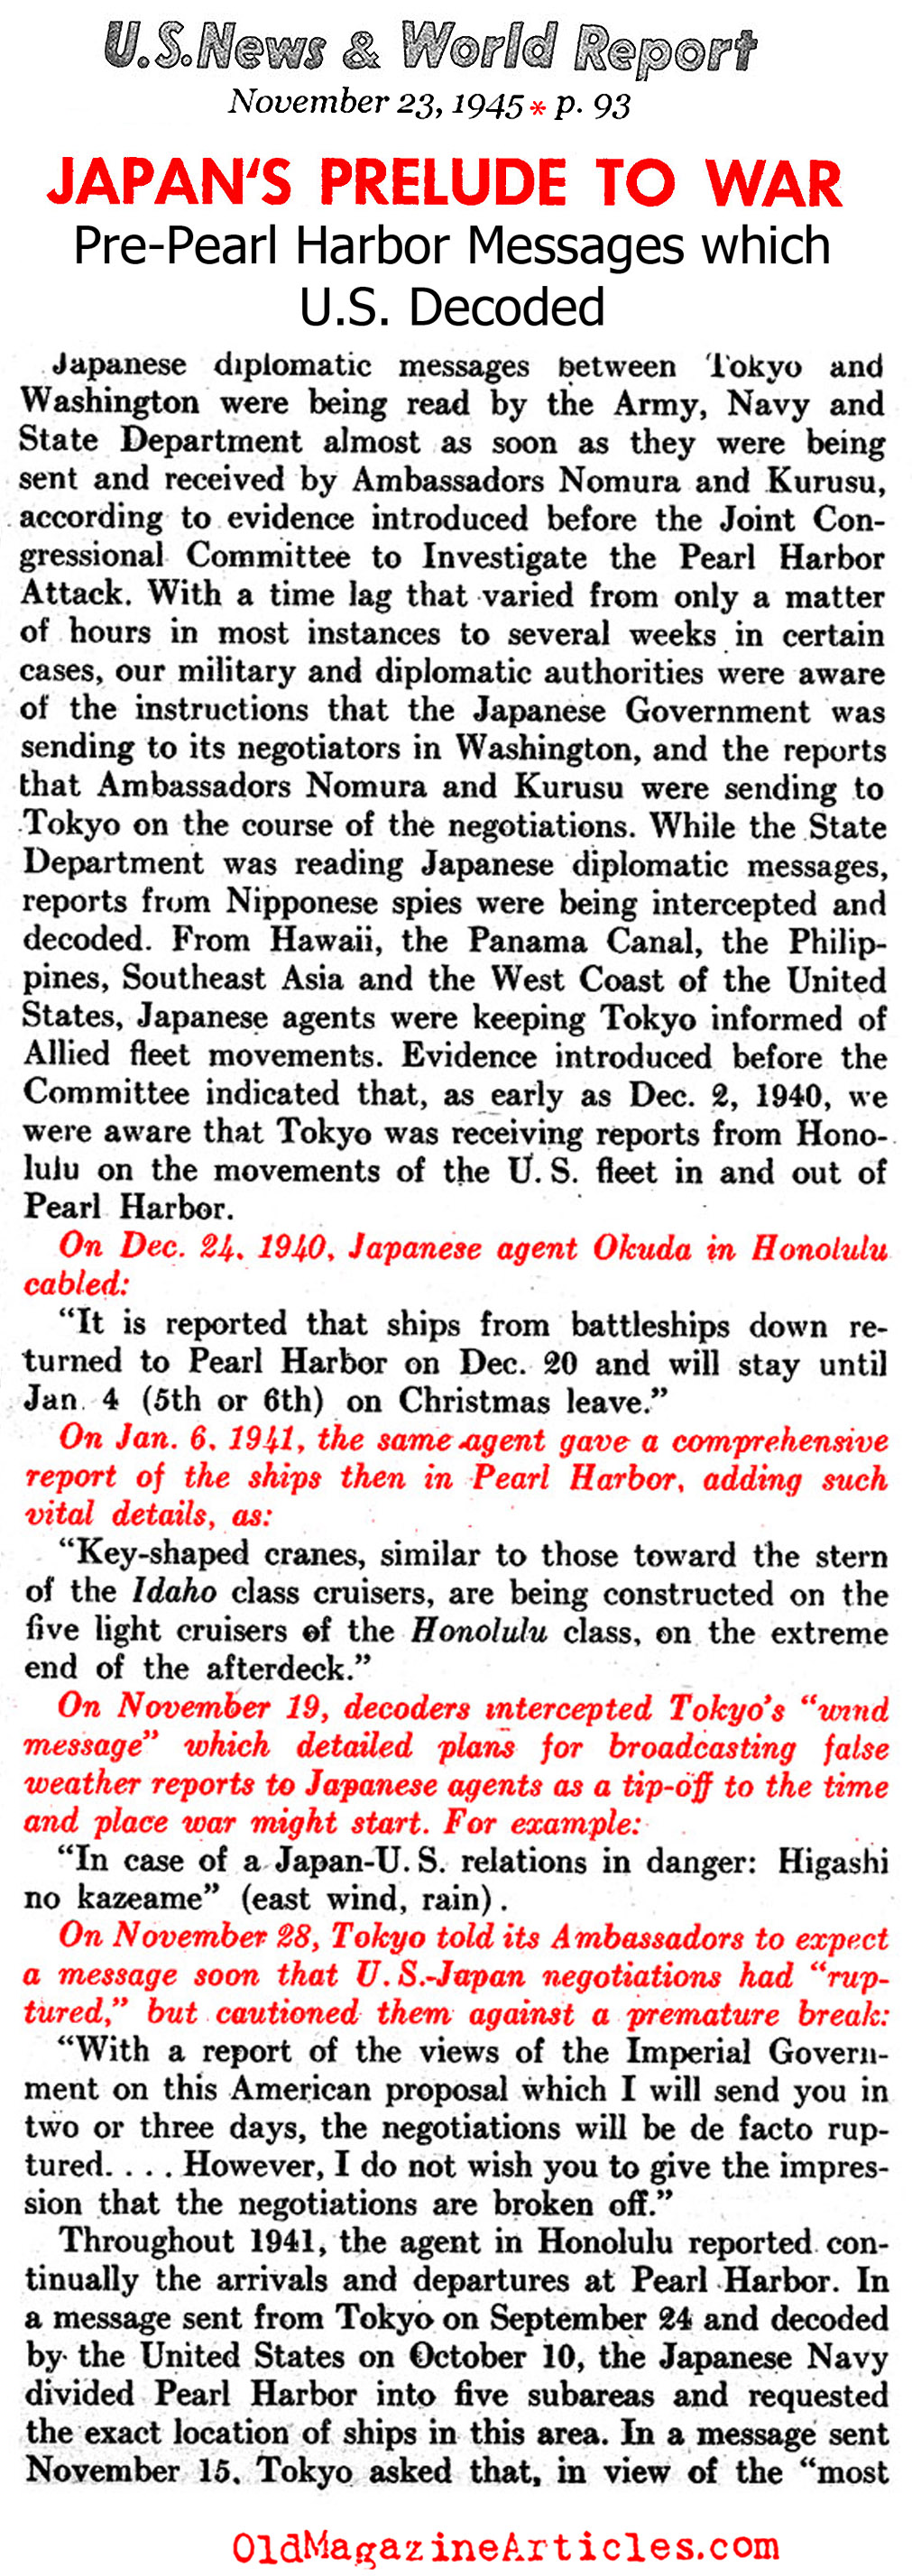 The Un-Secret Secrets (United States News, 1945)